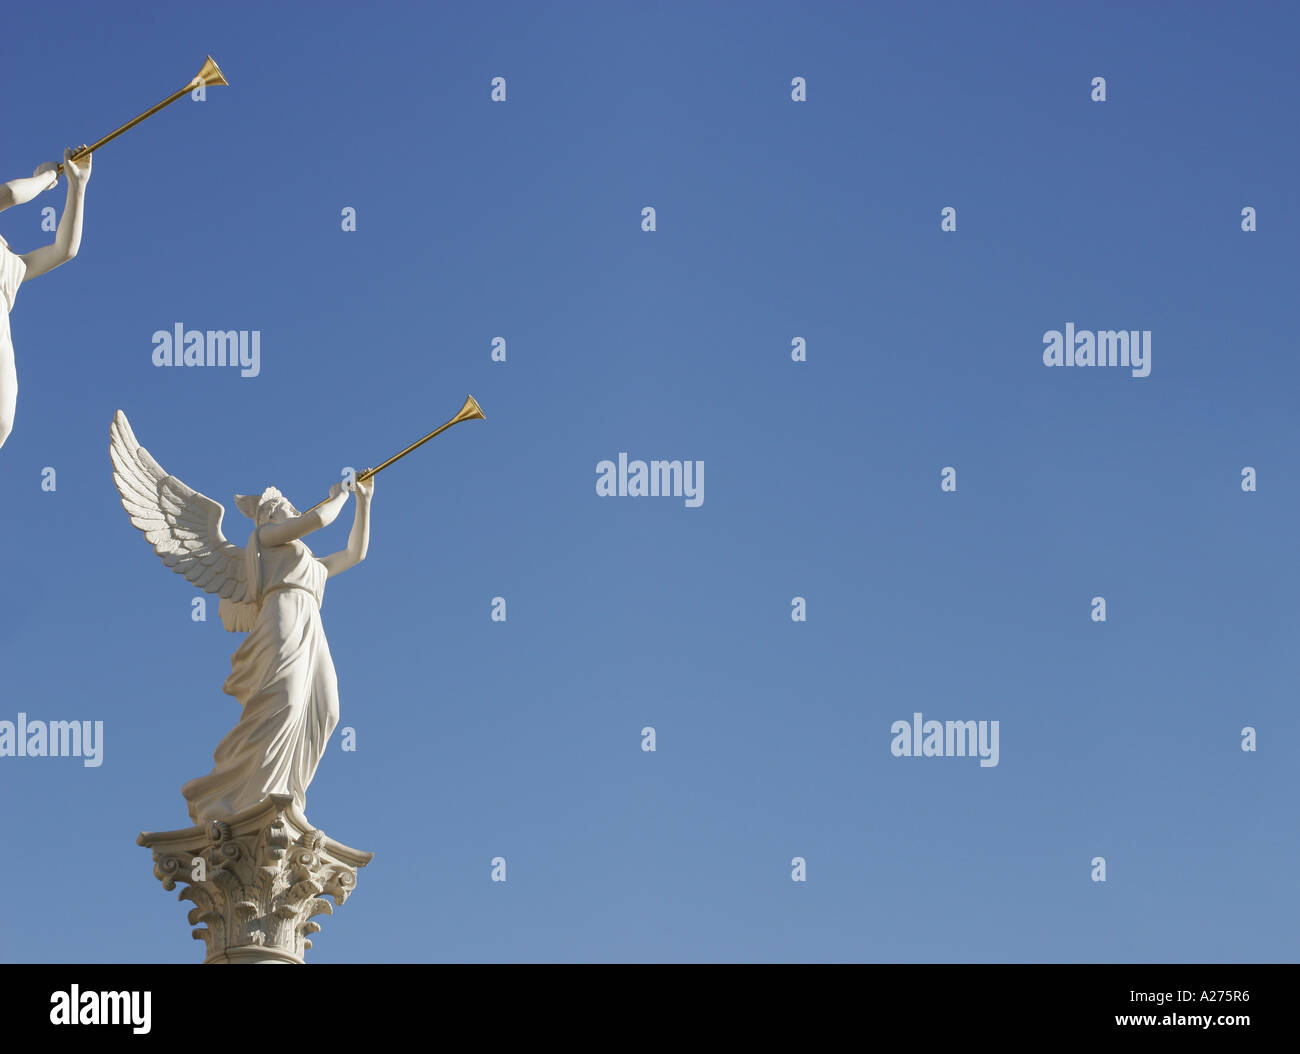 Angel Trumpet Statue Vector Art & Graphics